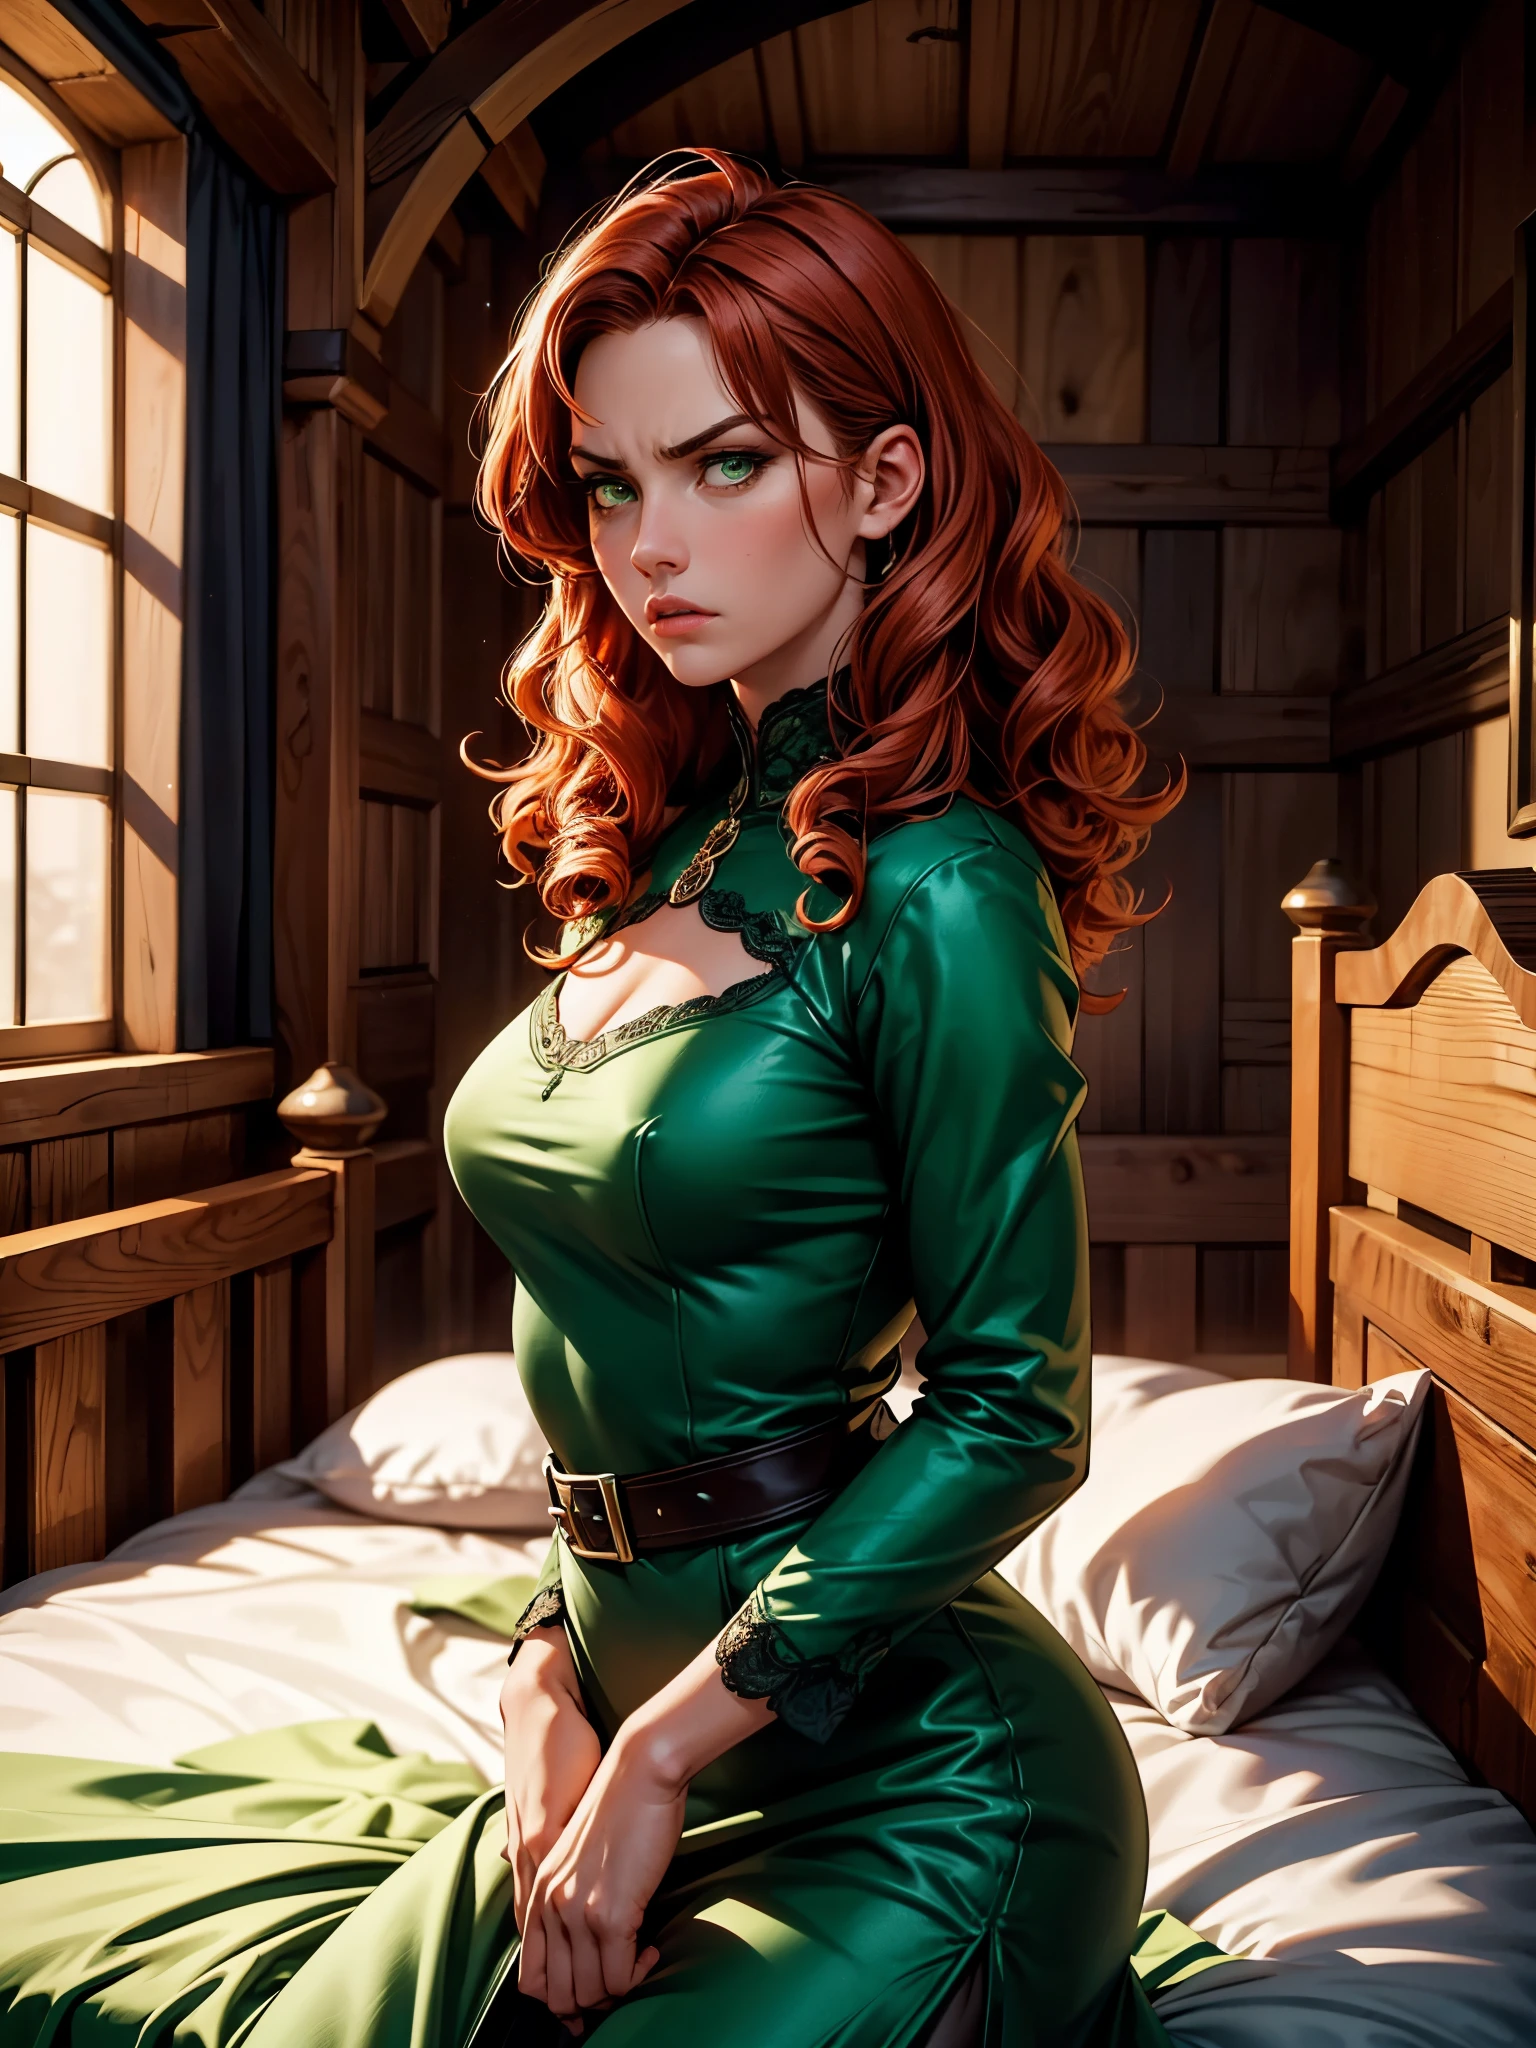 (في المساء, ضوء ضعيف) بشرة عادلة, امرأة تبلغ من العمر حوالي 19 عامًا, شعر أحمر مجعد, عيون خضراء مميزة, wearing a جميل medieval green dress, نحيلة ورشيقة, جميل, وجه غاضب, في سرير غرفة من العصور الوسطى, تركيز حاد للغاية, لقطة واقعية,, نظرة قائظ, الإغراء,
